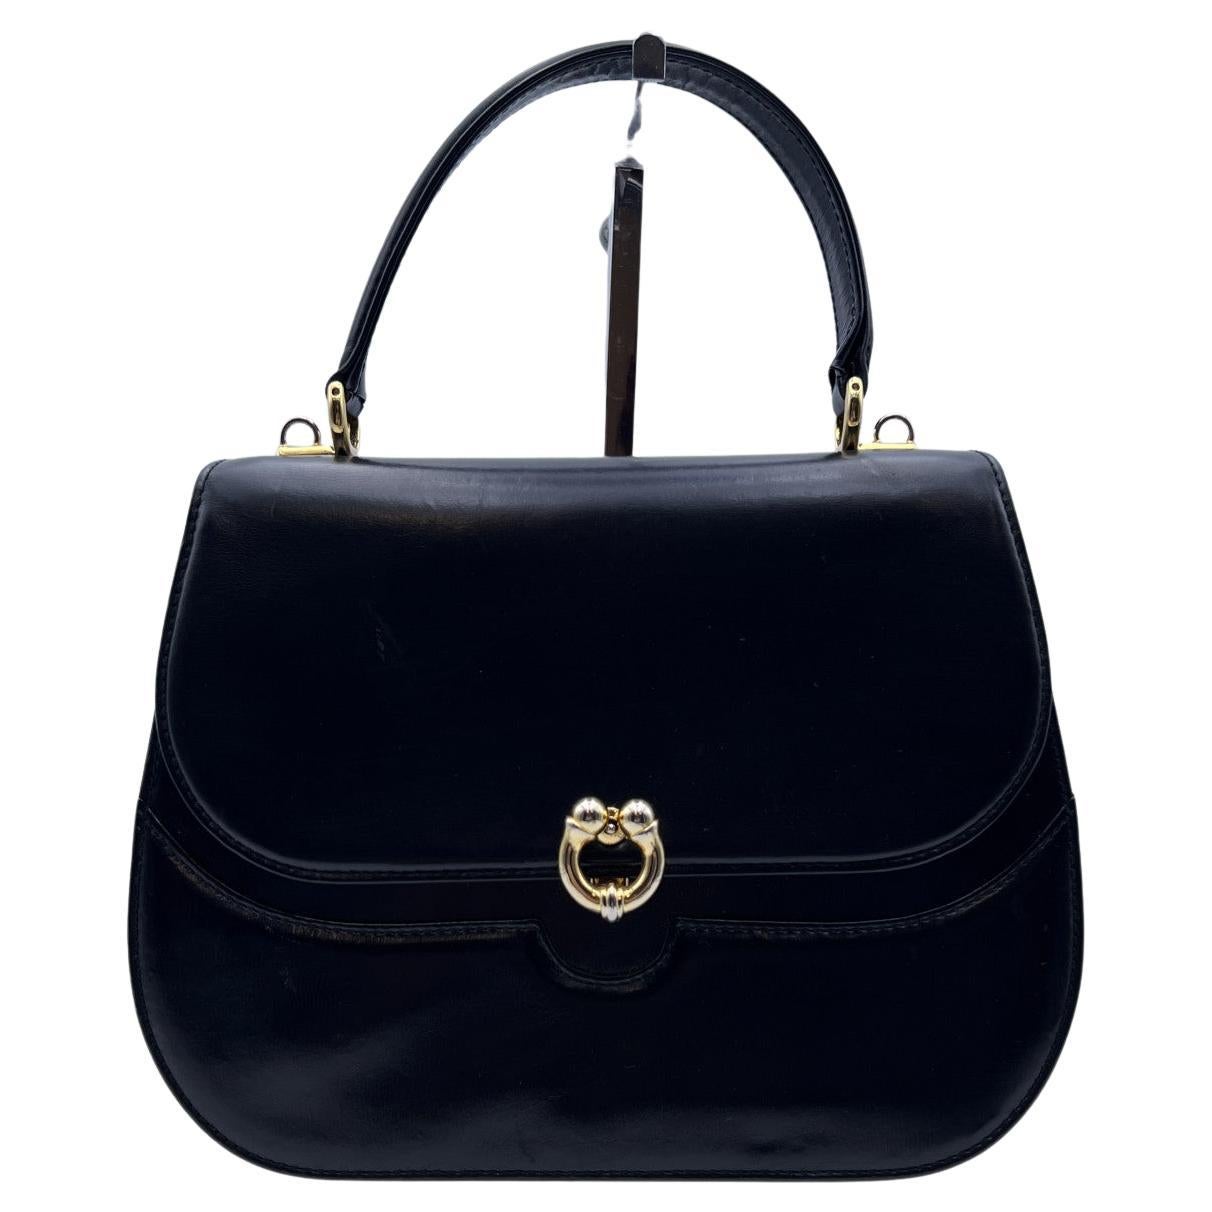 Gucci Vintage Black Leather Box Handbag with Shoulder Strap